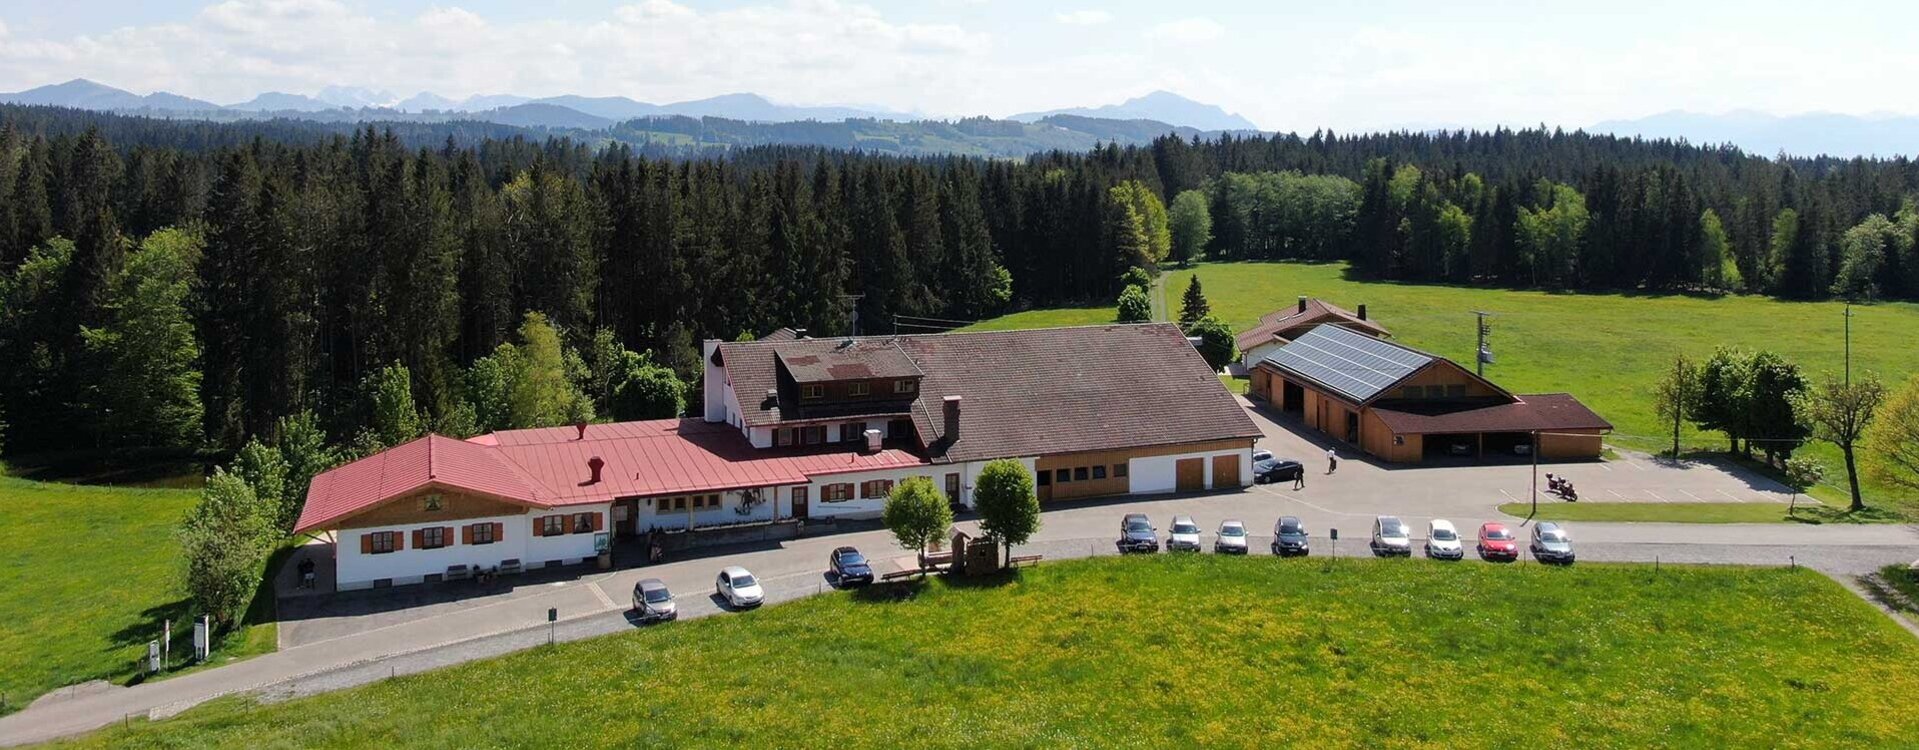 Waldgasthaus Tobias in Durach - Impressionen